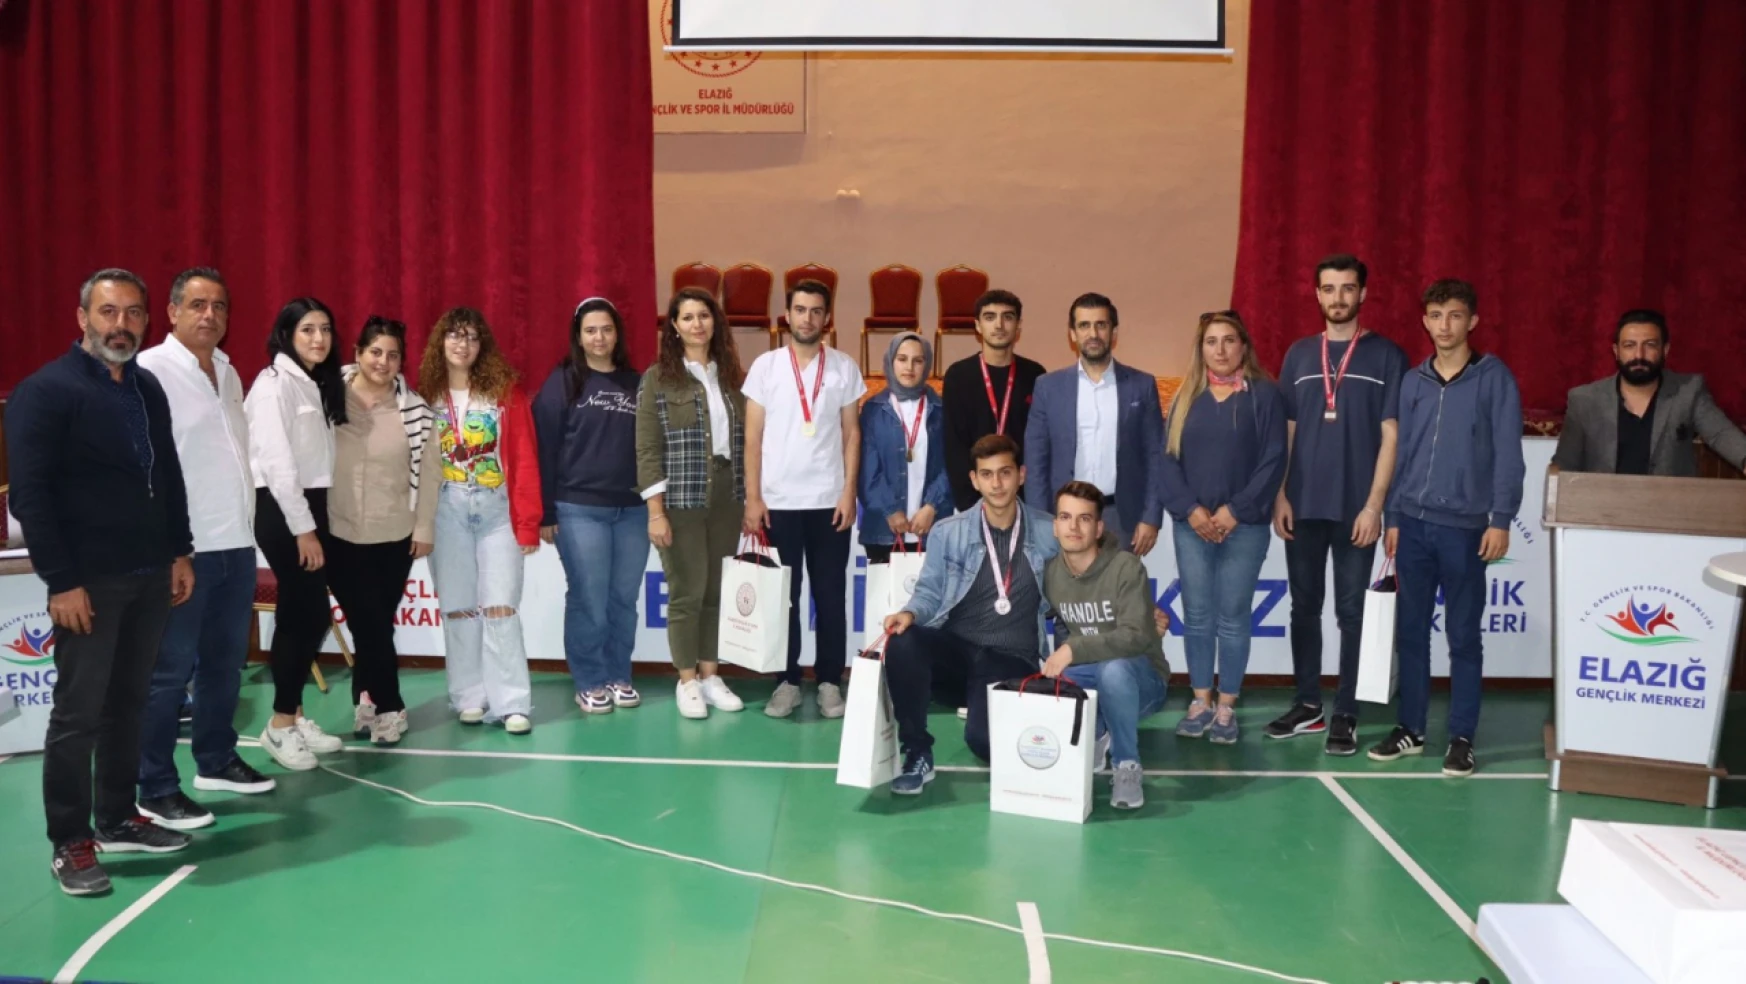 Elazığ'da bilgi yarışması il finali gerçekleştirildi